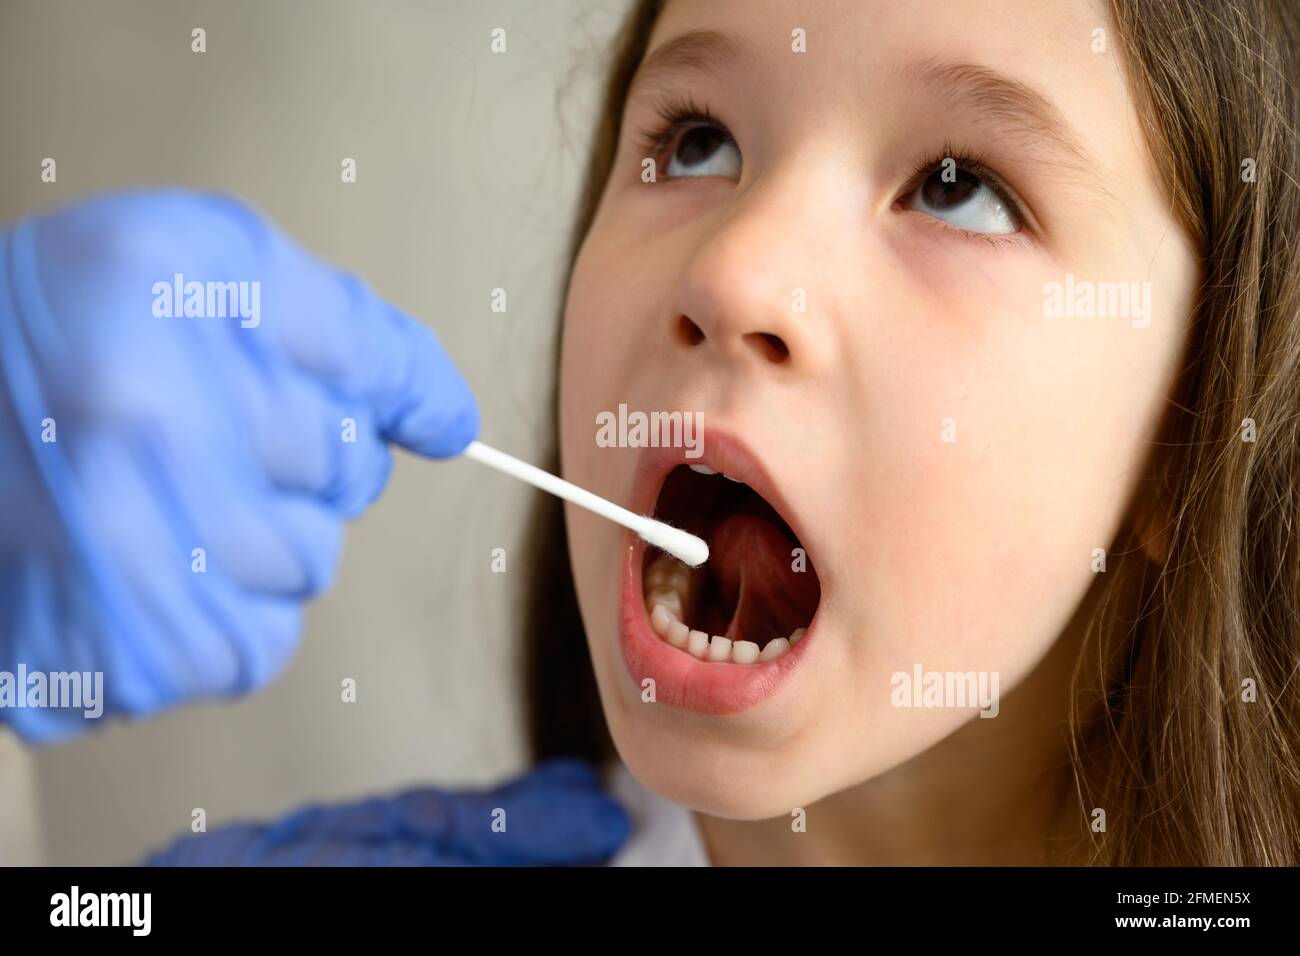 Test PCR COVID-19 et petit visage en gros plan, petite fille ouvre la bouche pour le test du coronavirus. Le médecin ou l'infirmière tient un écouvillon pour l'échantillon de salive d'un enfant mignon Banque D'Images